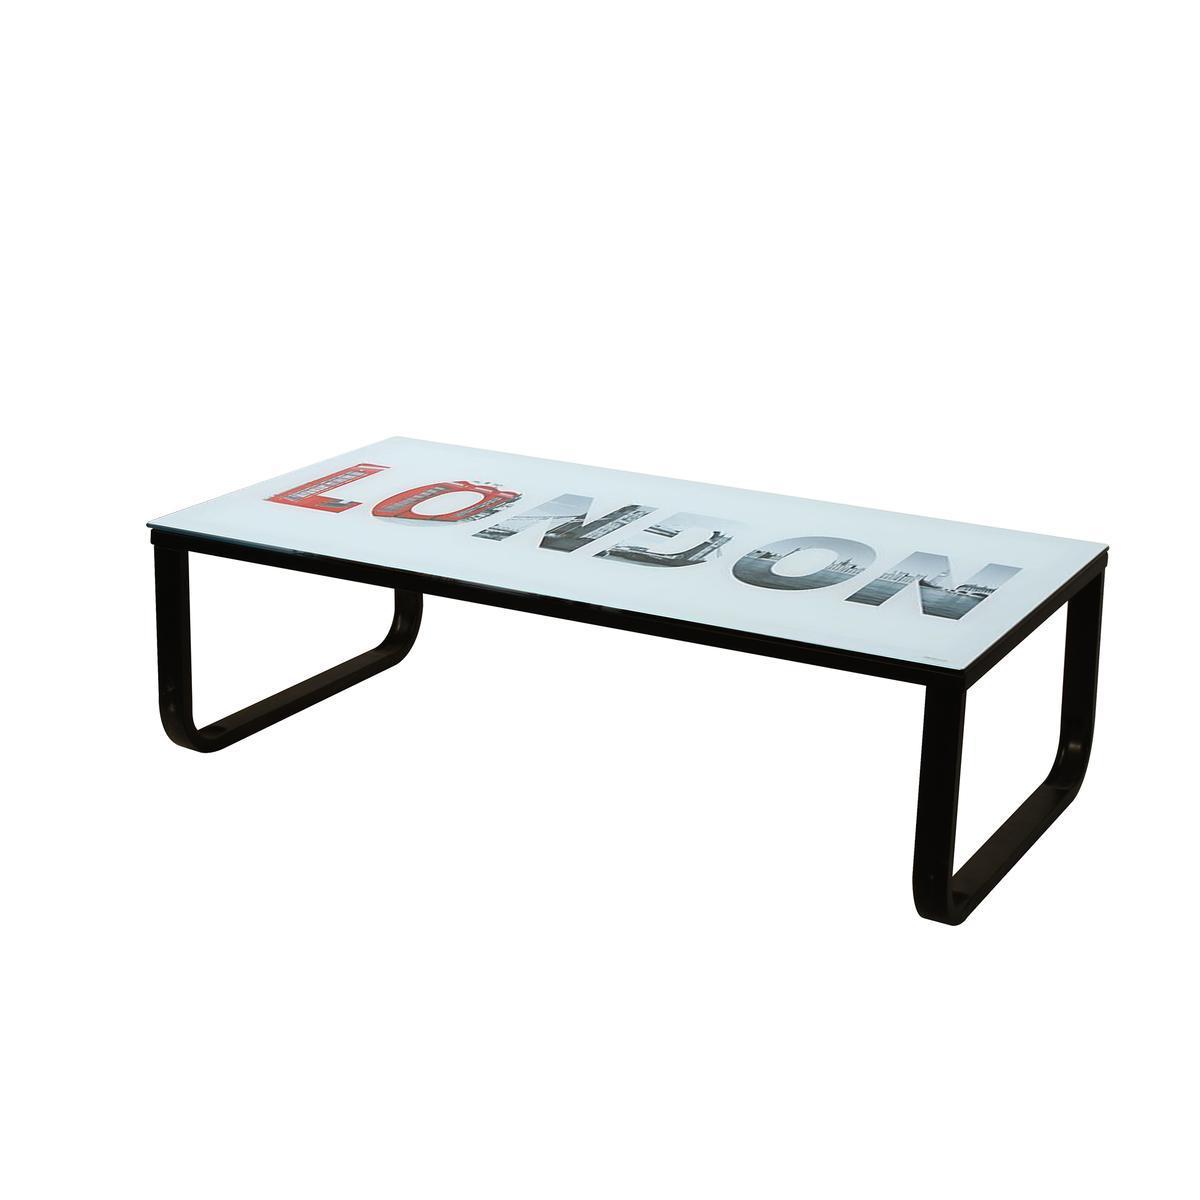 Table basse London - Verre trempé et acier - 110 x 55 x 40 cm - Noir et blanc